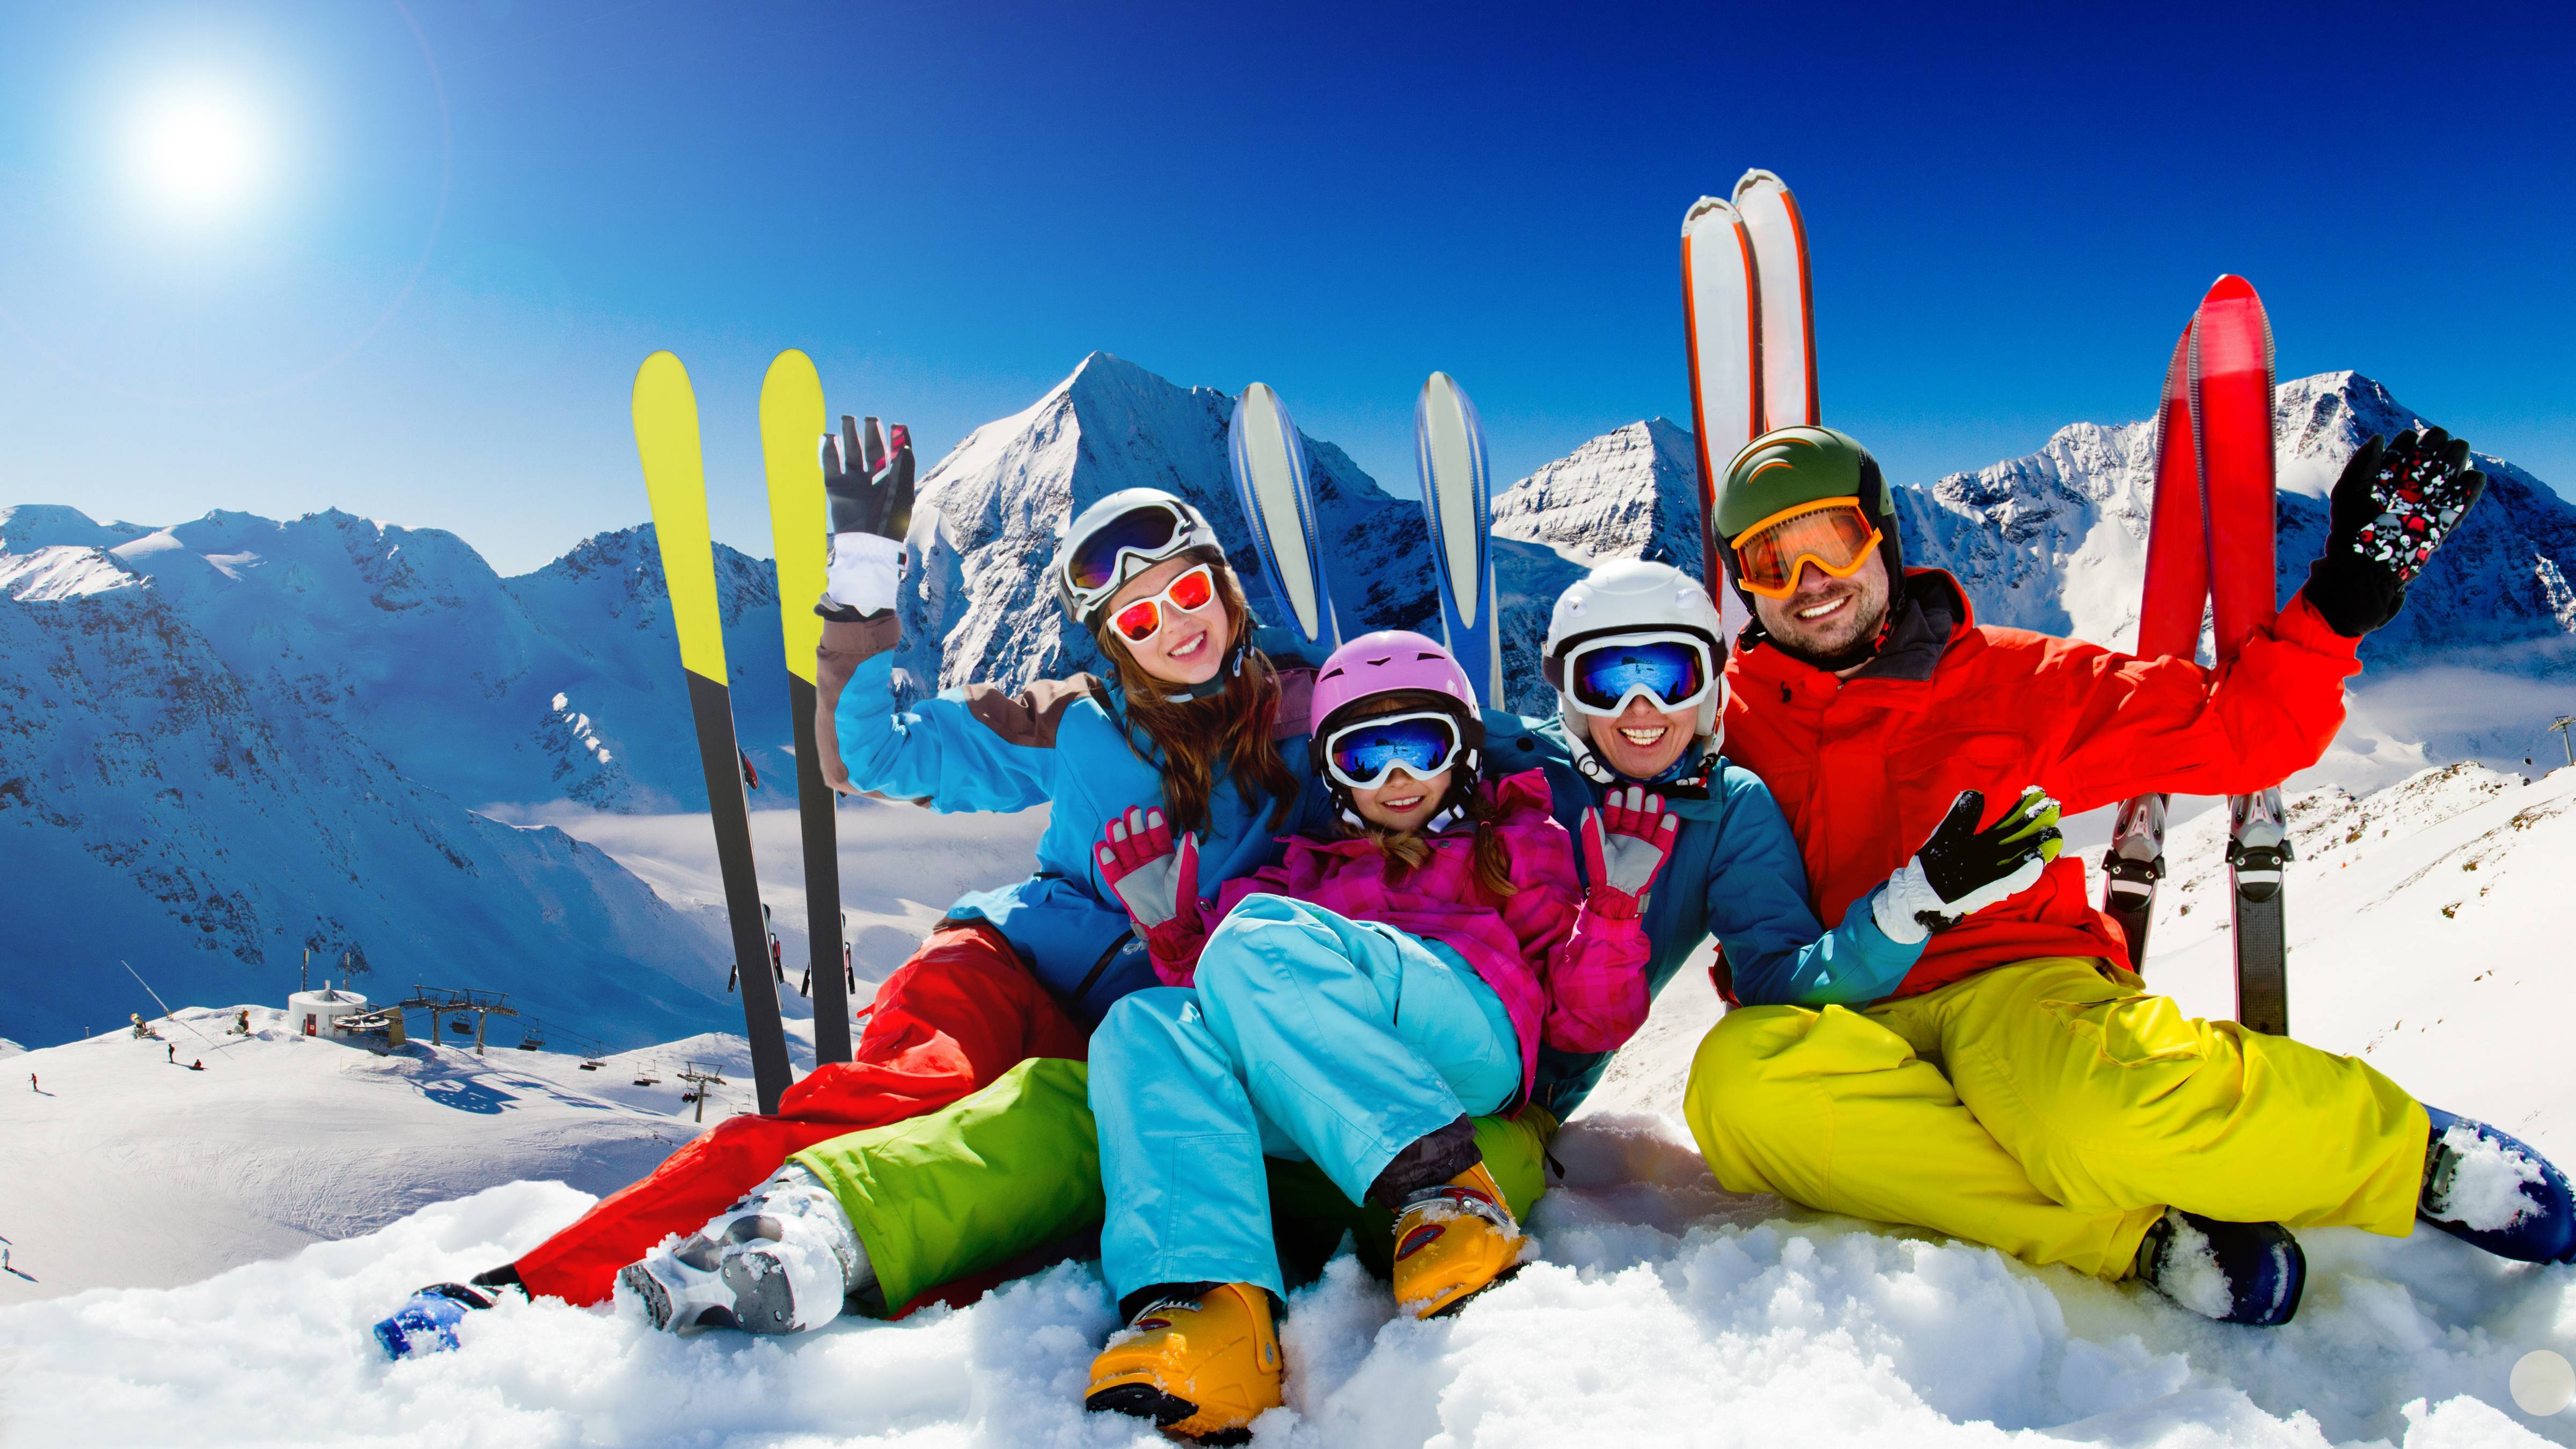 Центр зимнего спорта в австрии. Семья на горных лыжах. Горнолыжный спорт. Семья катается на лыжах в горах. Зимний курорт.